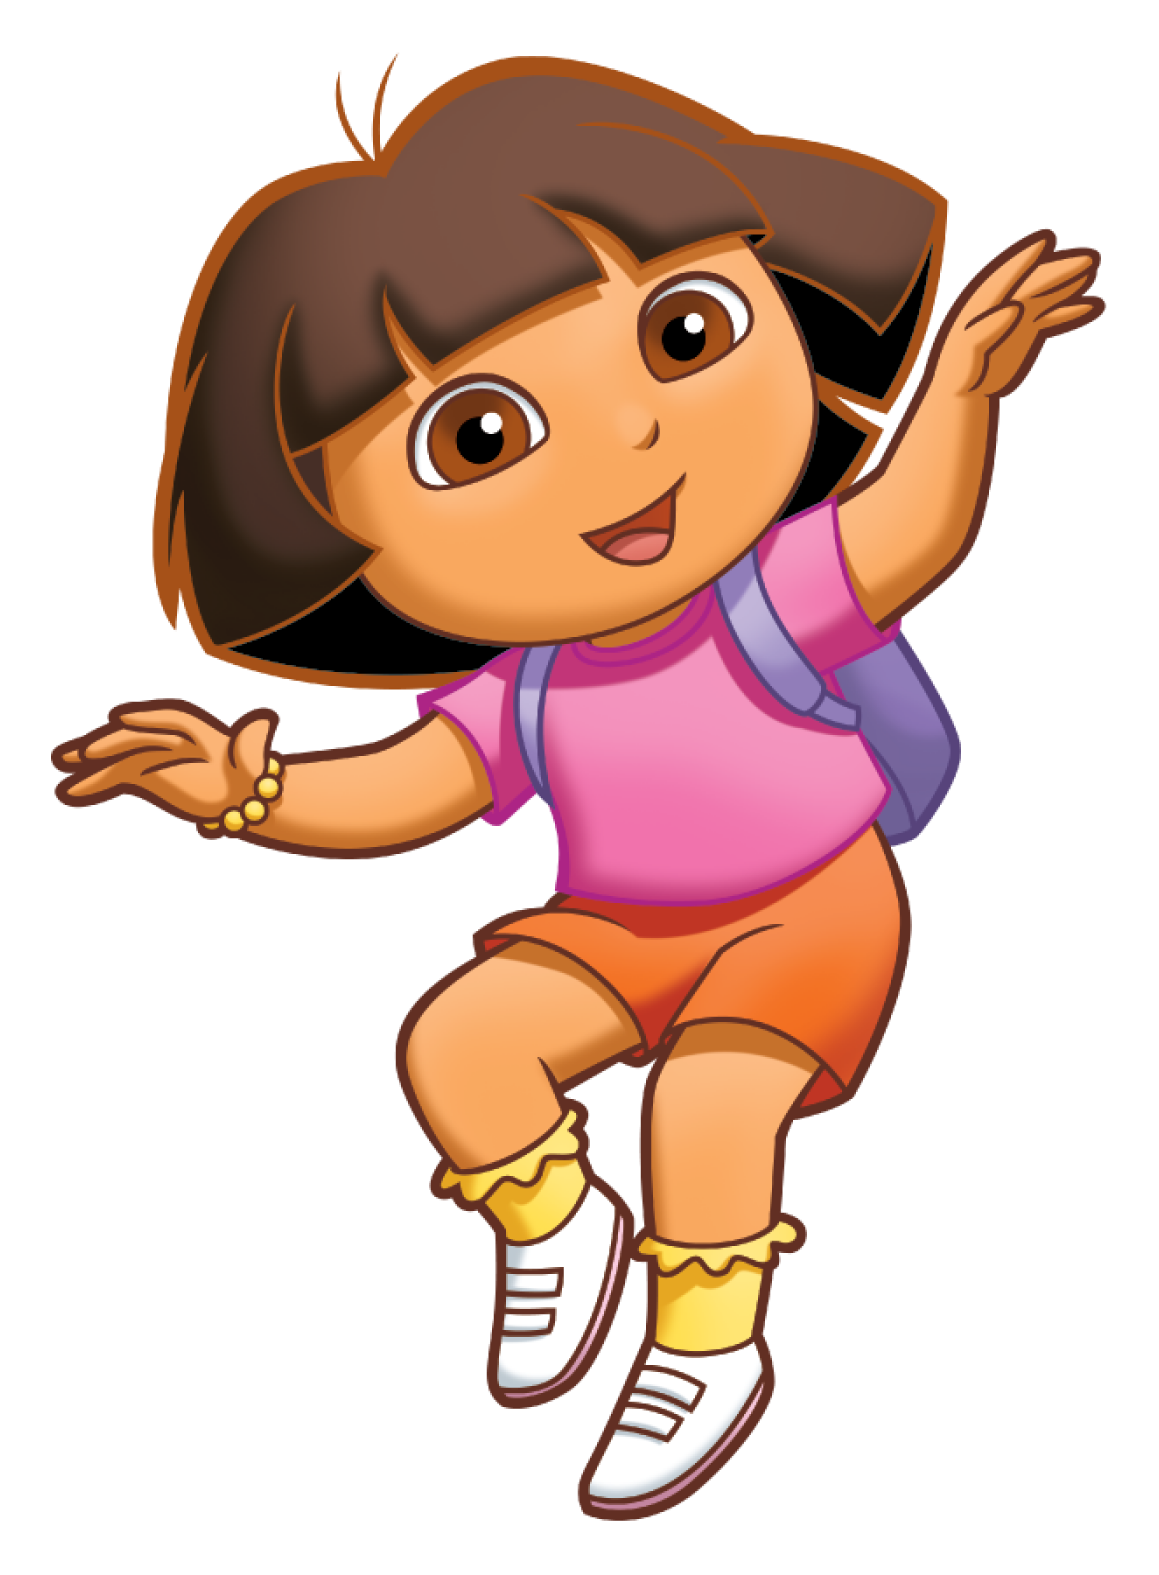 Dora The Explorer PNG Image Background.